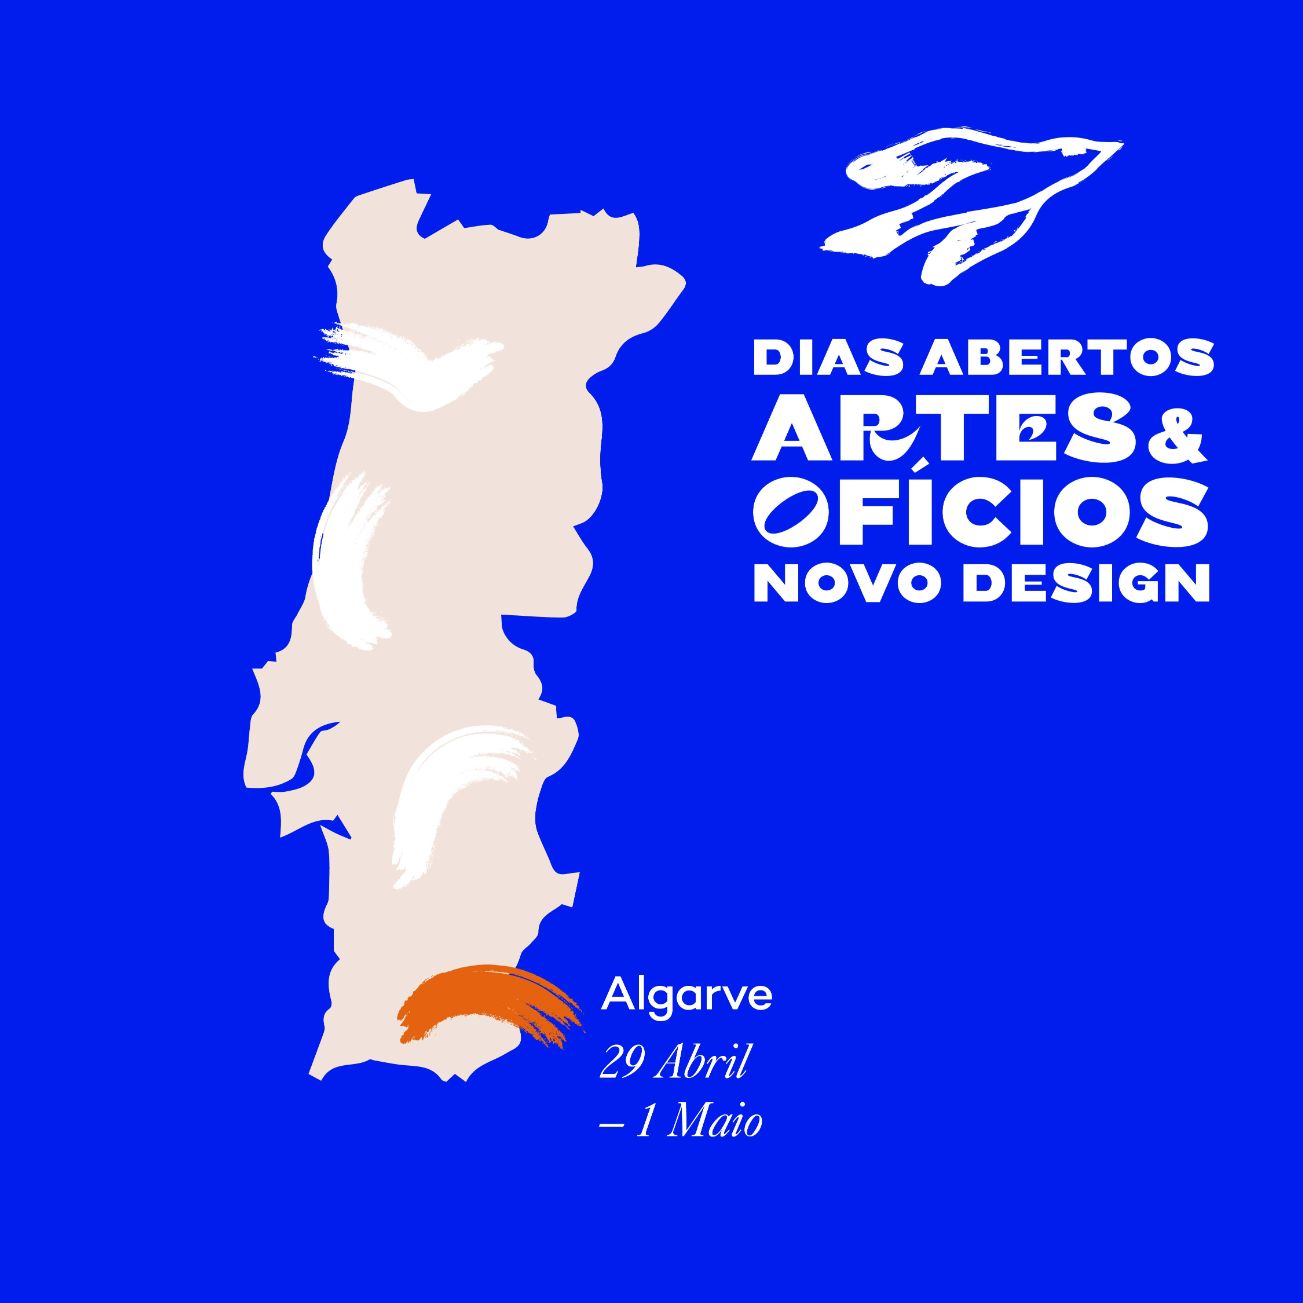 No âmbito da Bienal Artes & Ofícios | Novo Design realizam-se, de 29 de Abril a 1 de Maio, os Dias Abertos no Algarve